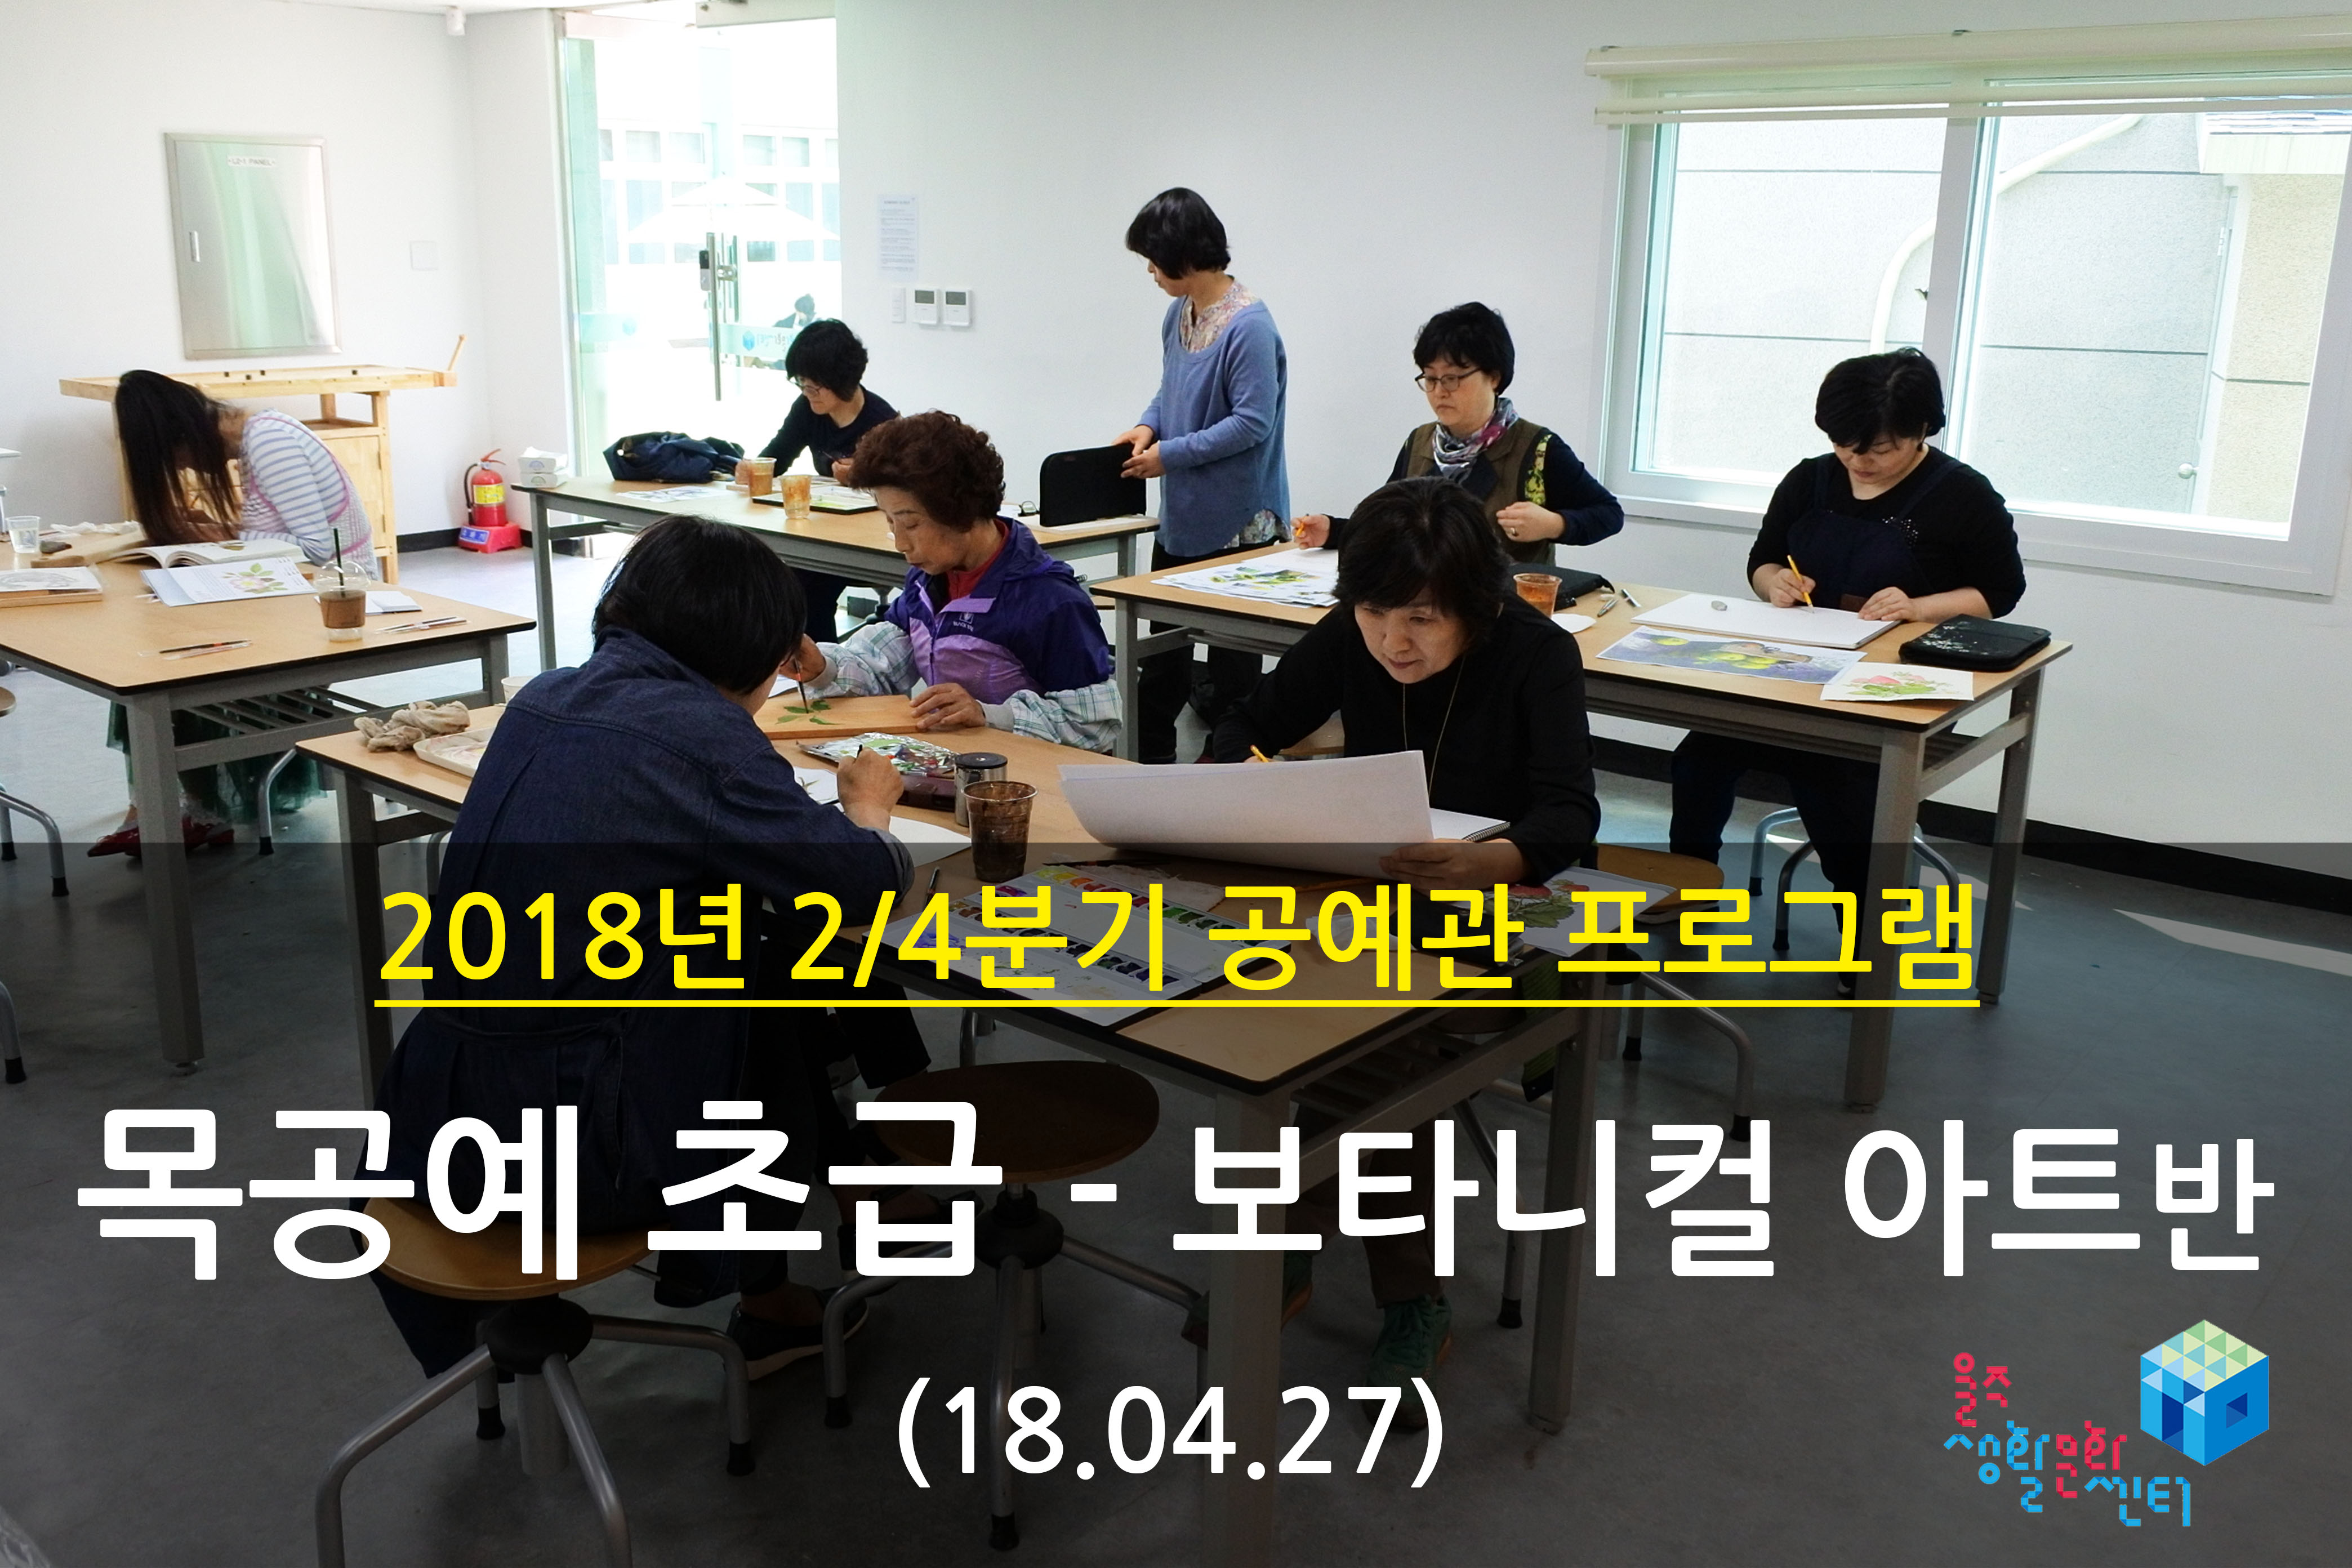 2018.04.27 _ 목공예 초급 - 보타니컬 아트반 _ 2/4분기 4주차 수업